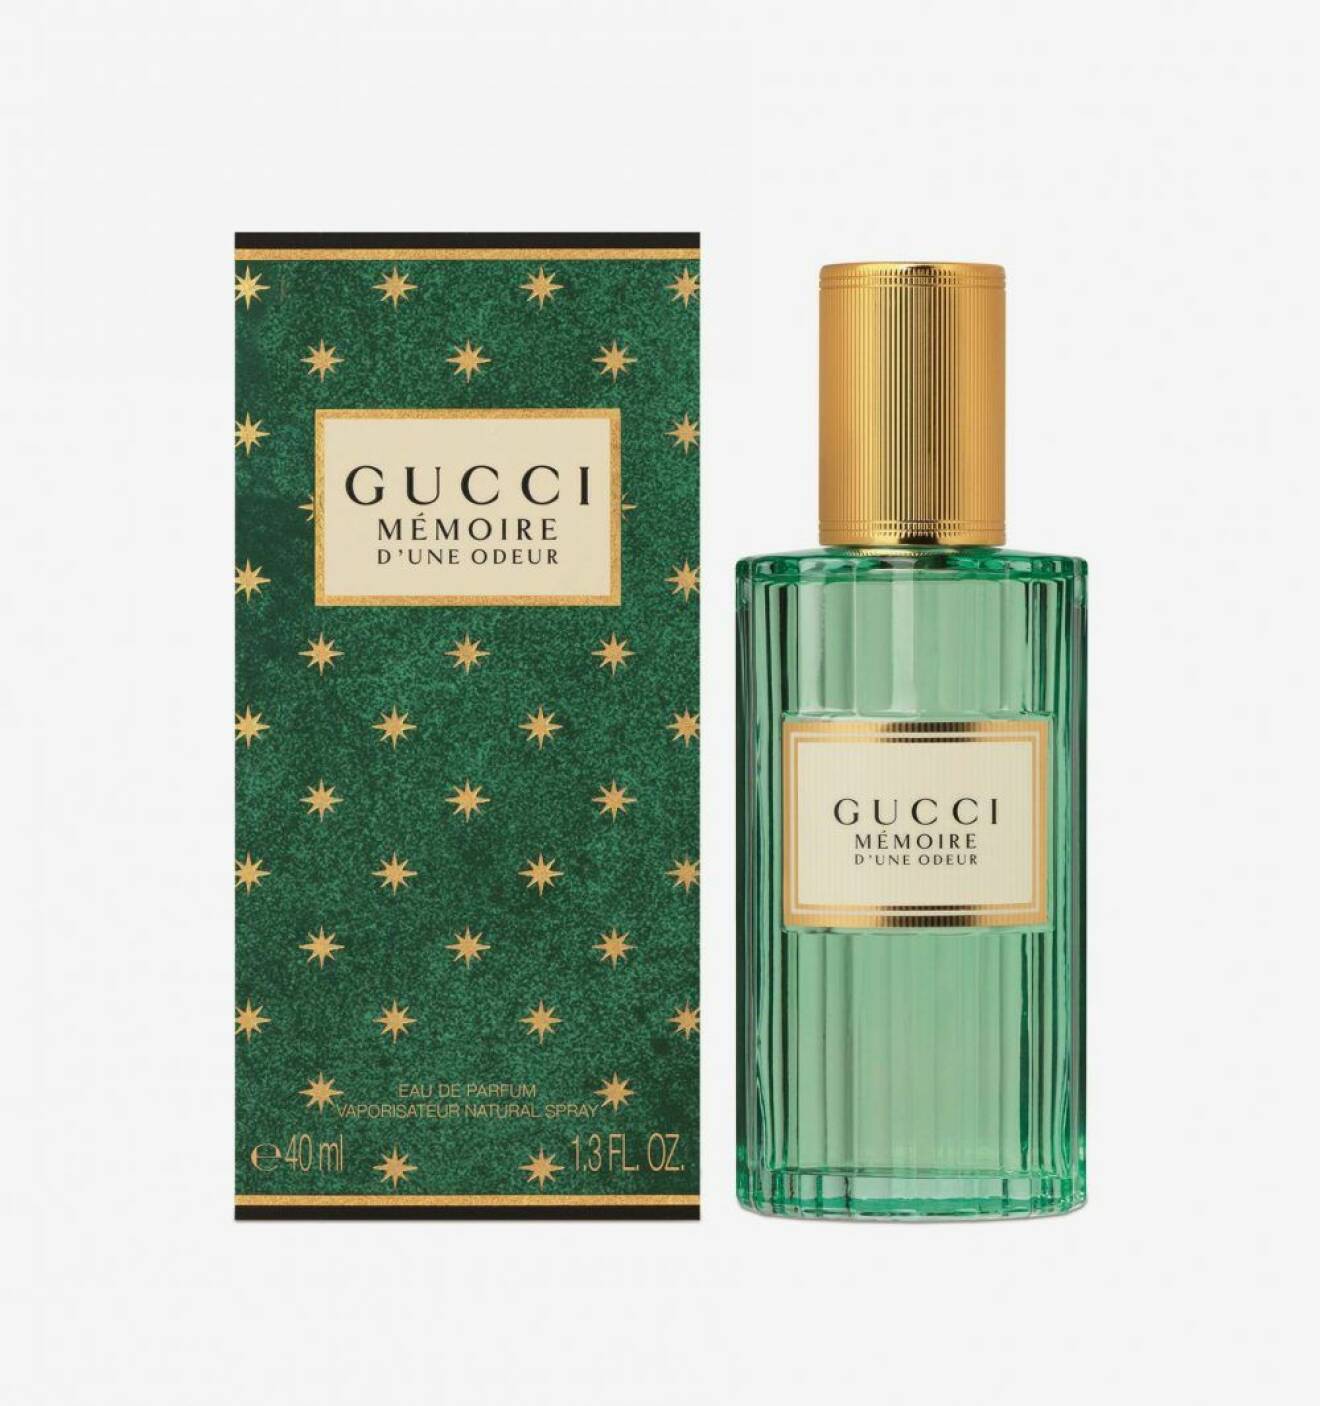 Gucci, Mémoire d'une odeur. 